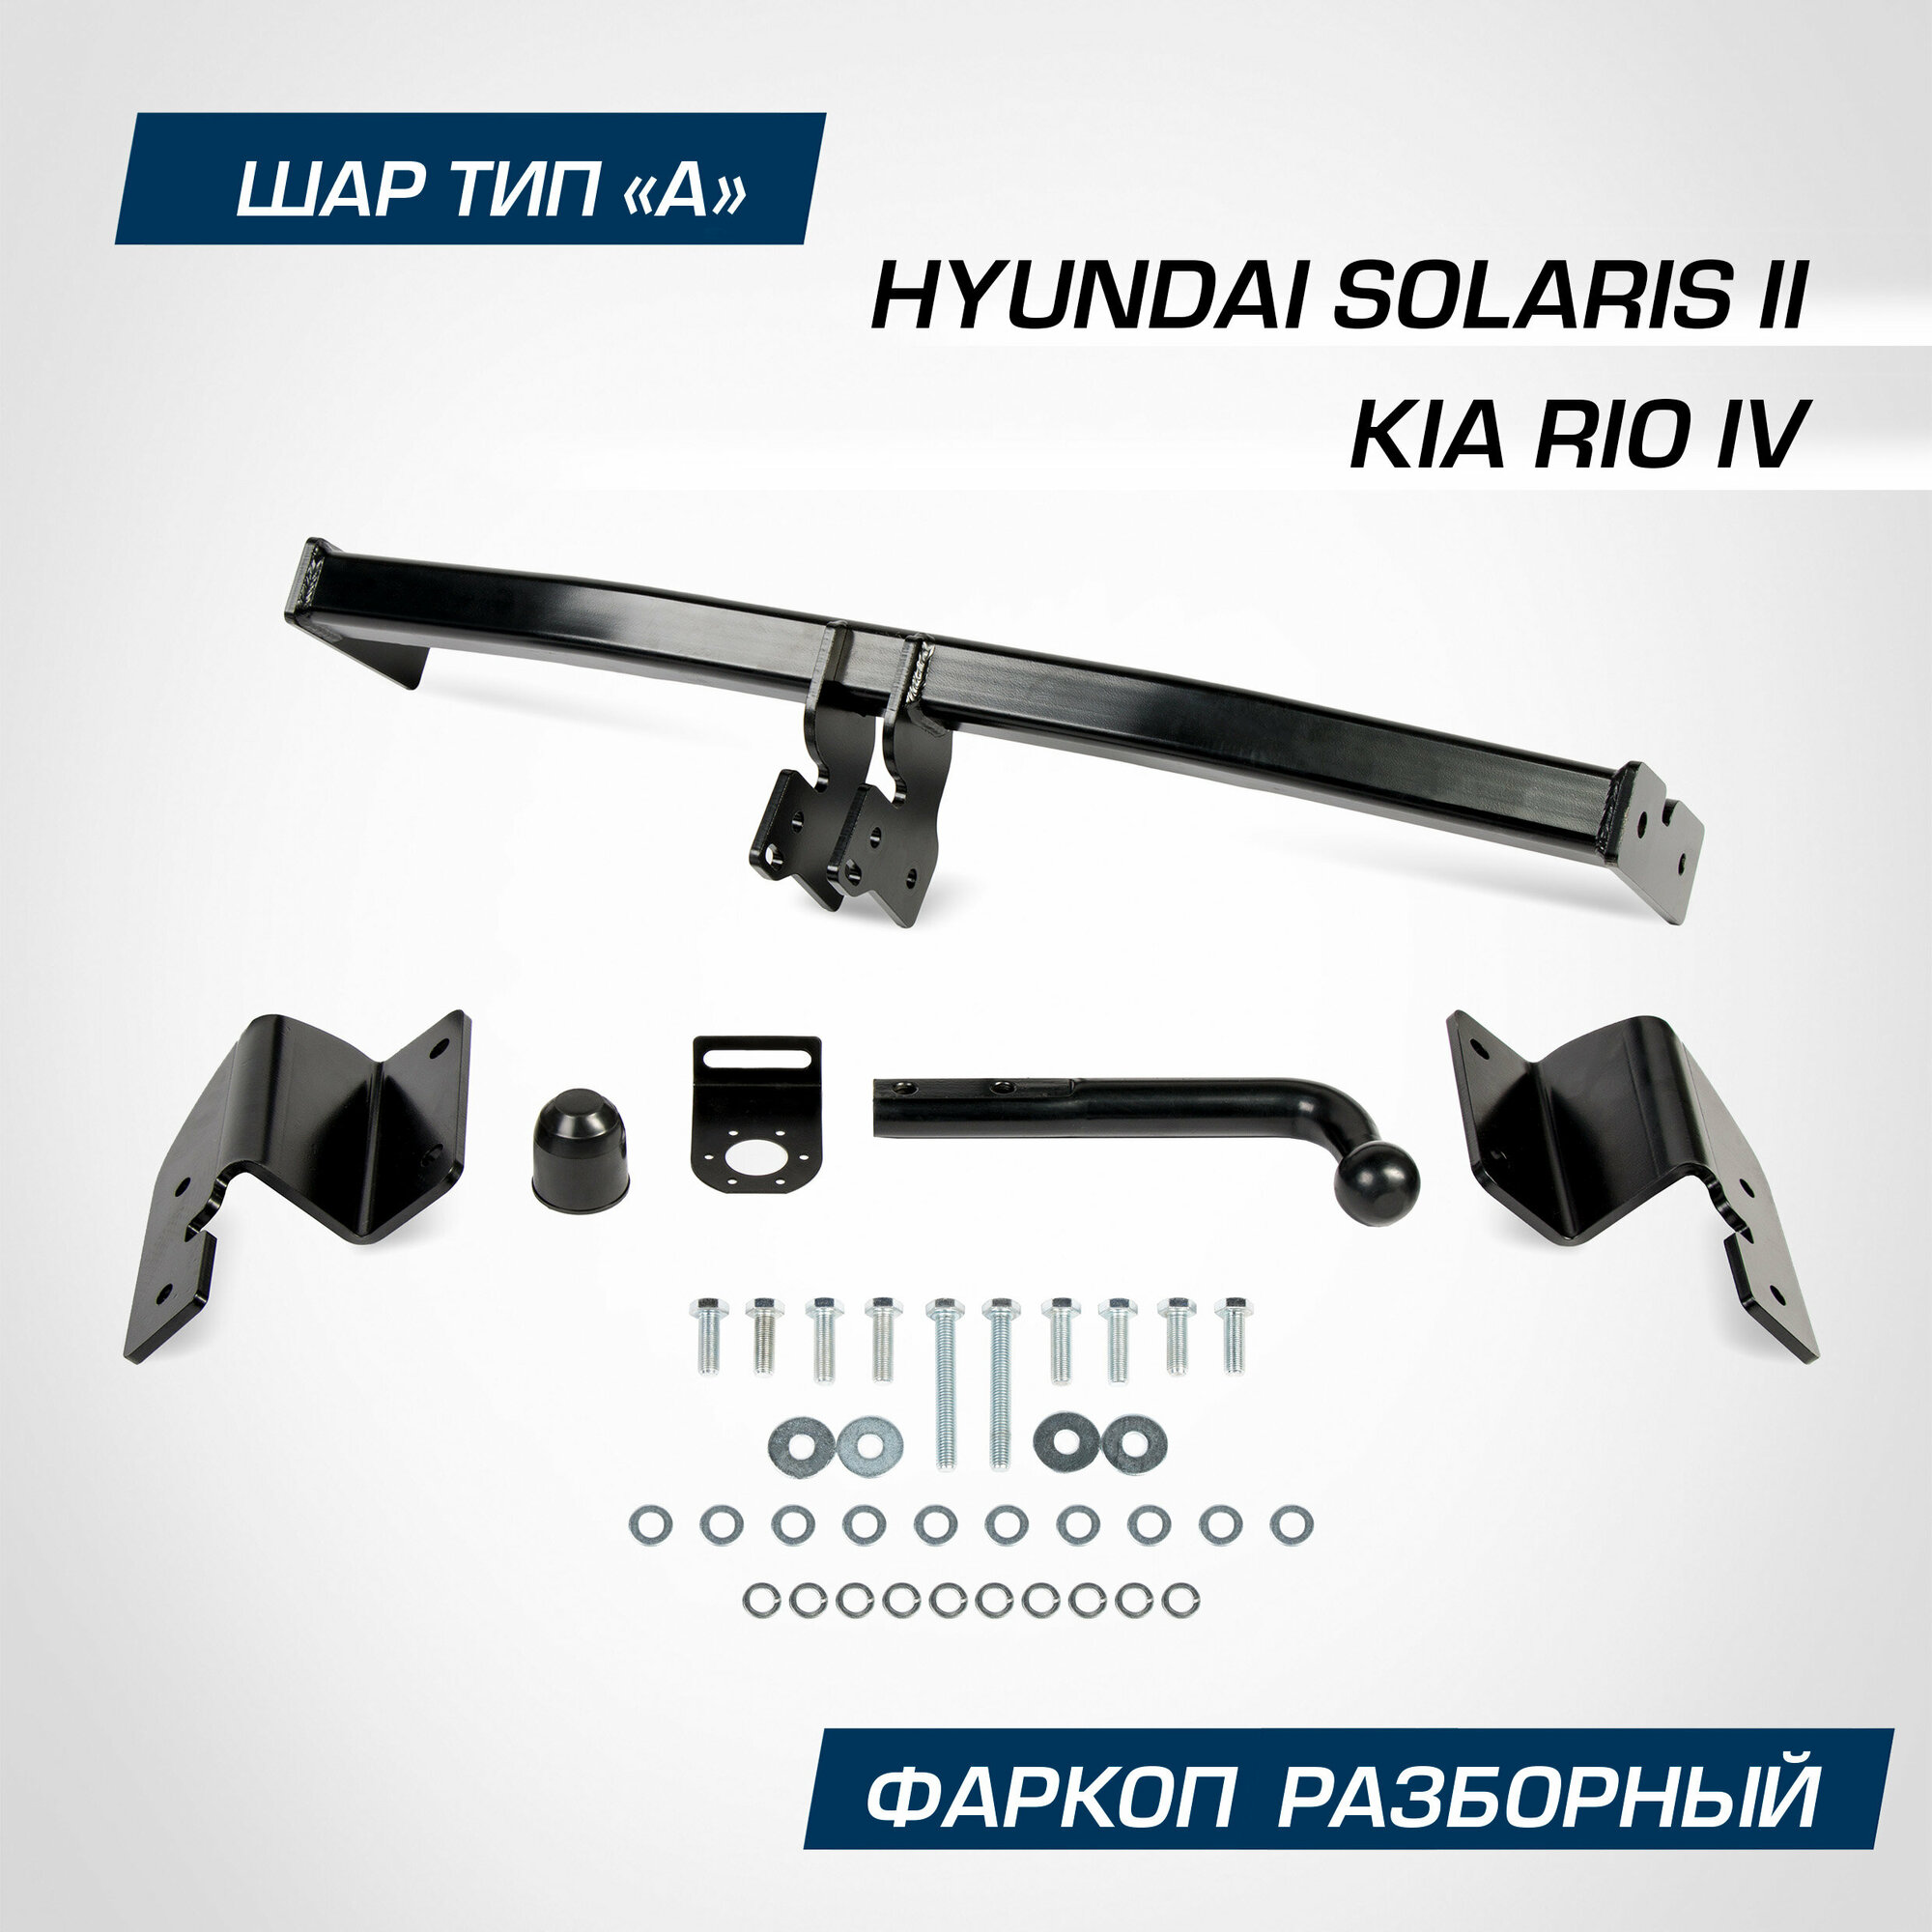 Фаркоп Berg для Hyundai Solaris II поколение 2017-2020 2020-н. в./Kia Rio IV поколение 2020-н. в шар А 1200/75 кг F.2311.001